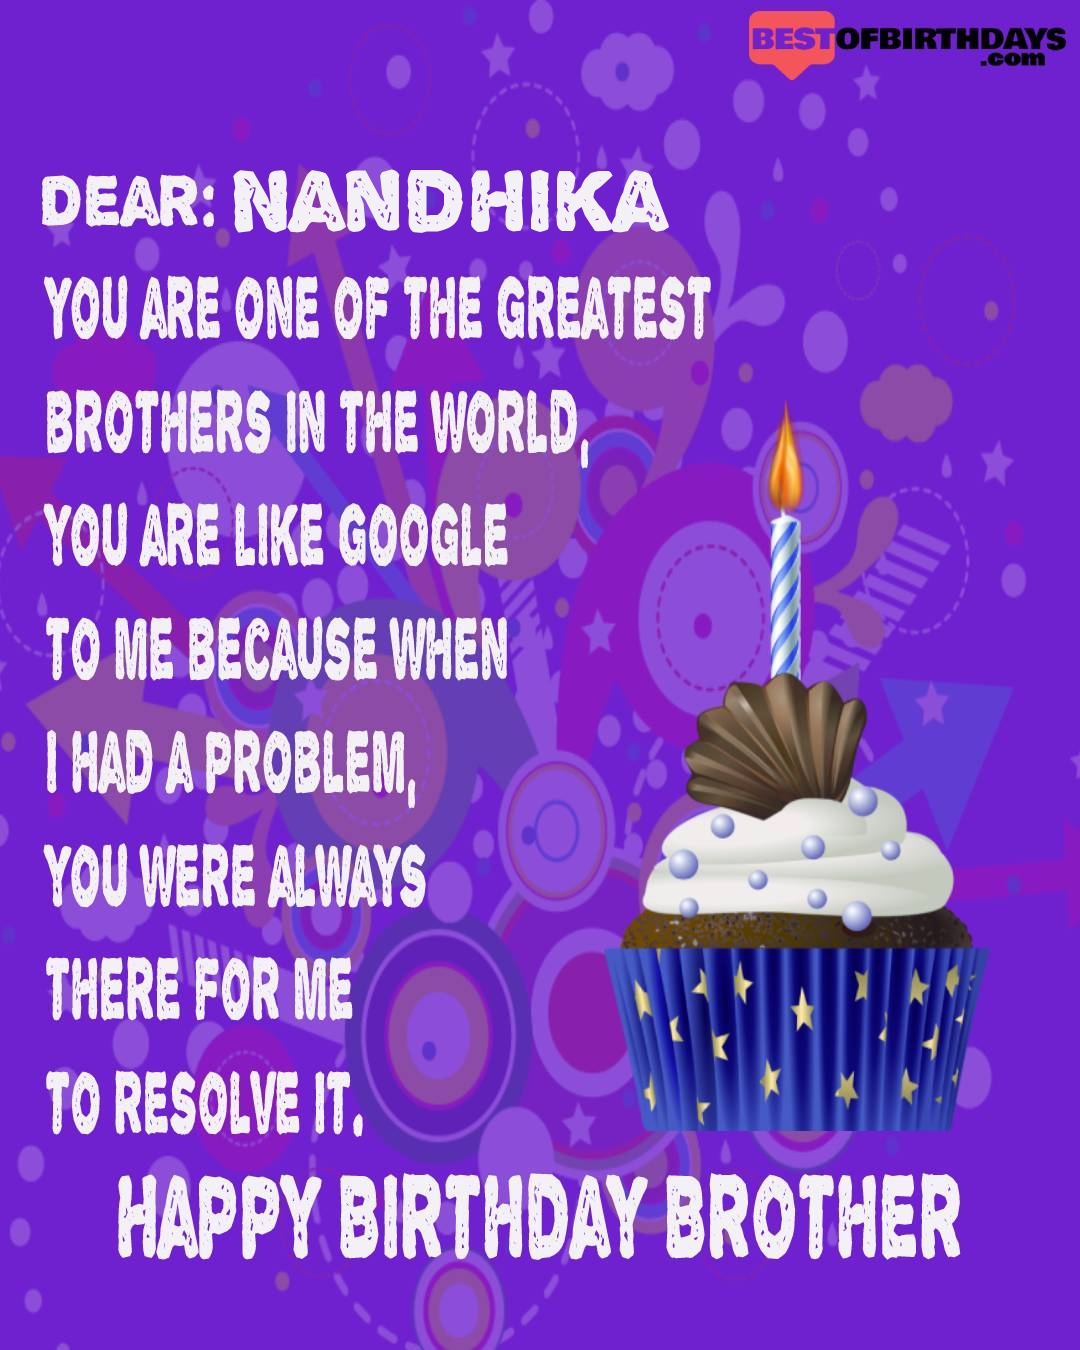 Happy birthday nandhika bhai brother bro